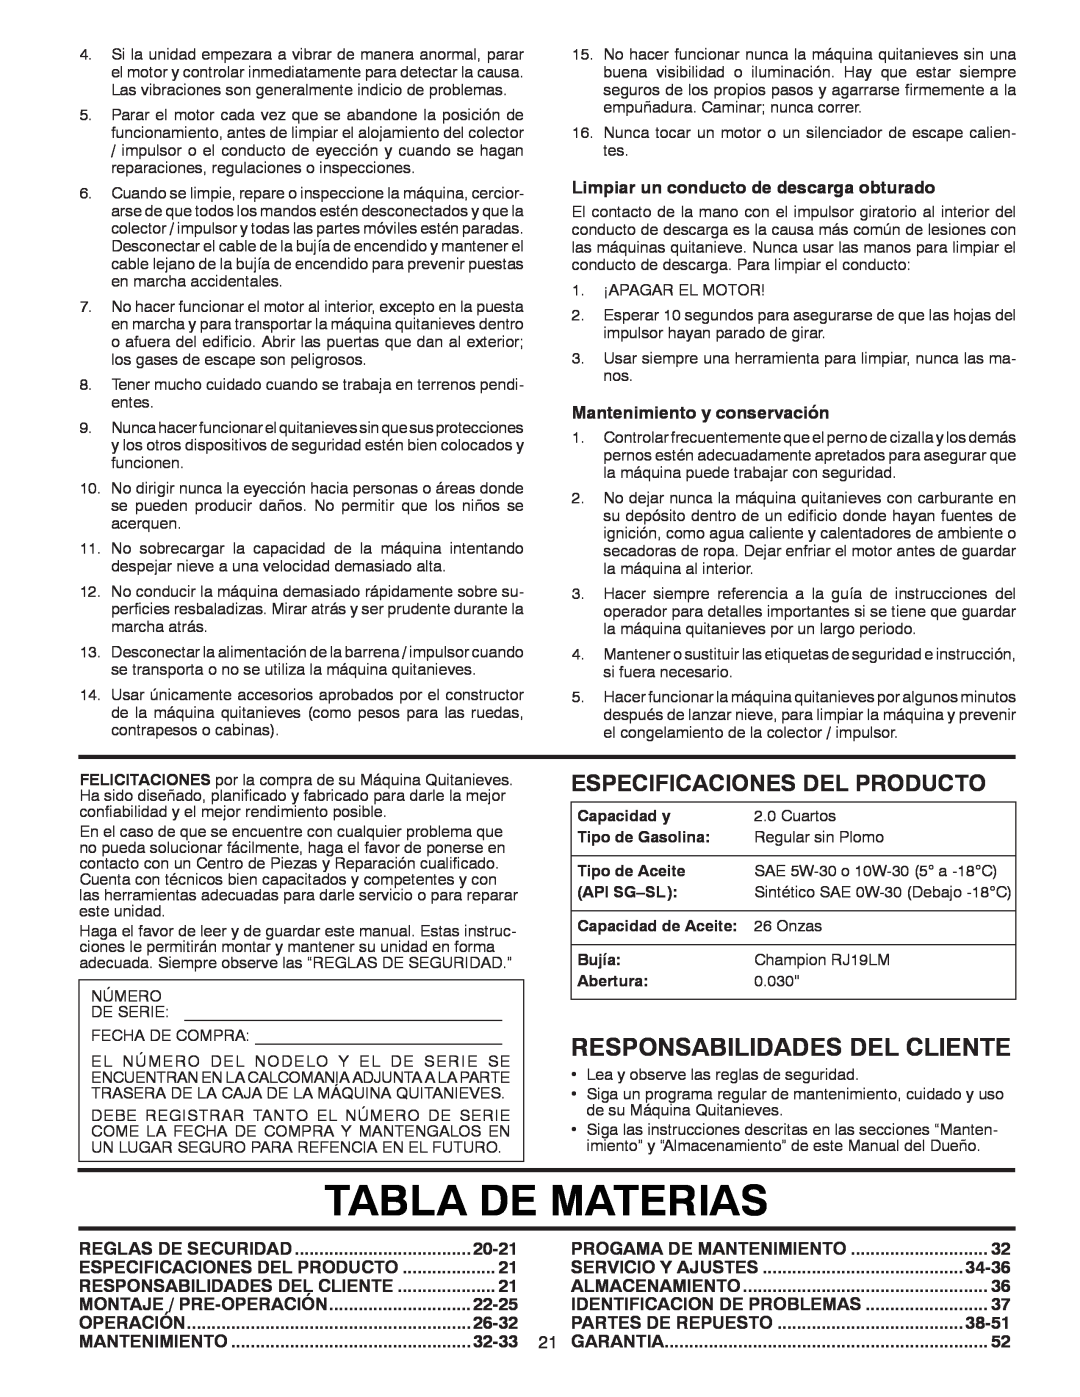 Poulan 96194000602, 418984 owner manual Tabla De Materias, Responsabilidades Del Cliente, Especificaciones Del Producto 